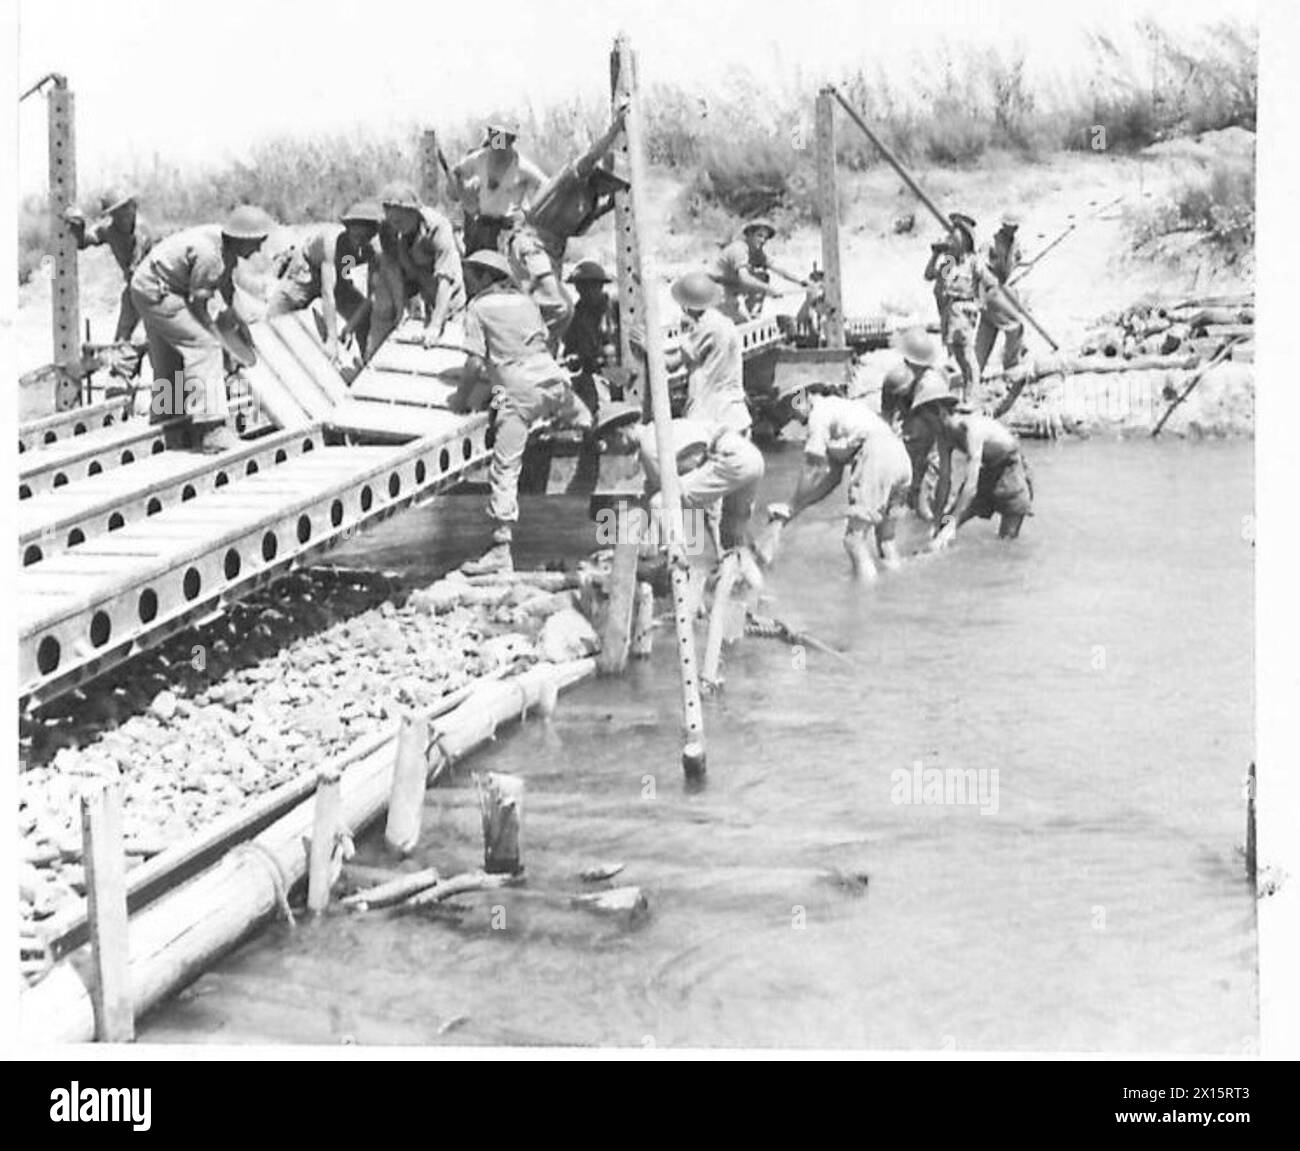 INVASION VON SIZILIEN GORNALUNGA, nahe CATANIA - Sapper des 252 Field Coy. R.E. Fertigstellung der Bauarbeiten einer Pontonbrücke über die FOCE DEL SIMETO, einer der natürlichen Verteidigungsanlagen außerhalb von CATANIA. Der Bau dieser Brücke war von entscheidender Bedeutung, da die Hauptbrücke unter Beobachtung und feindlichem Granatfeuer der British Army diente Stockfoto